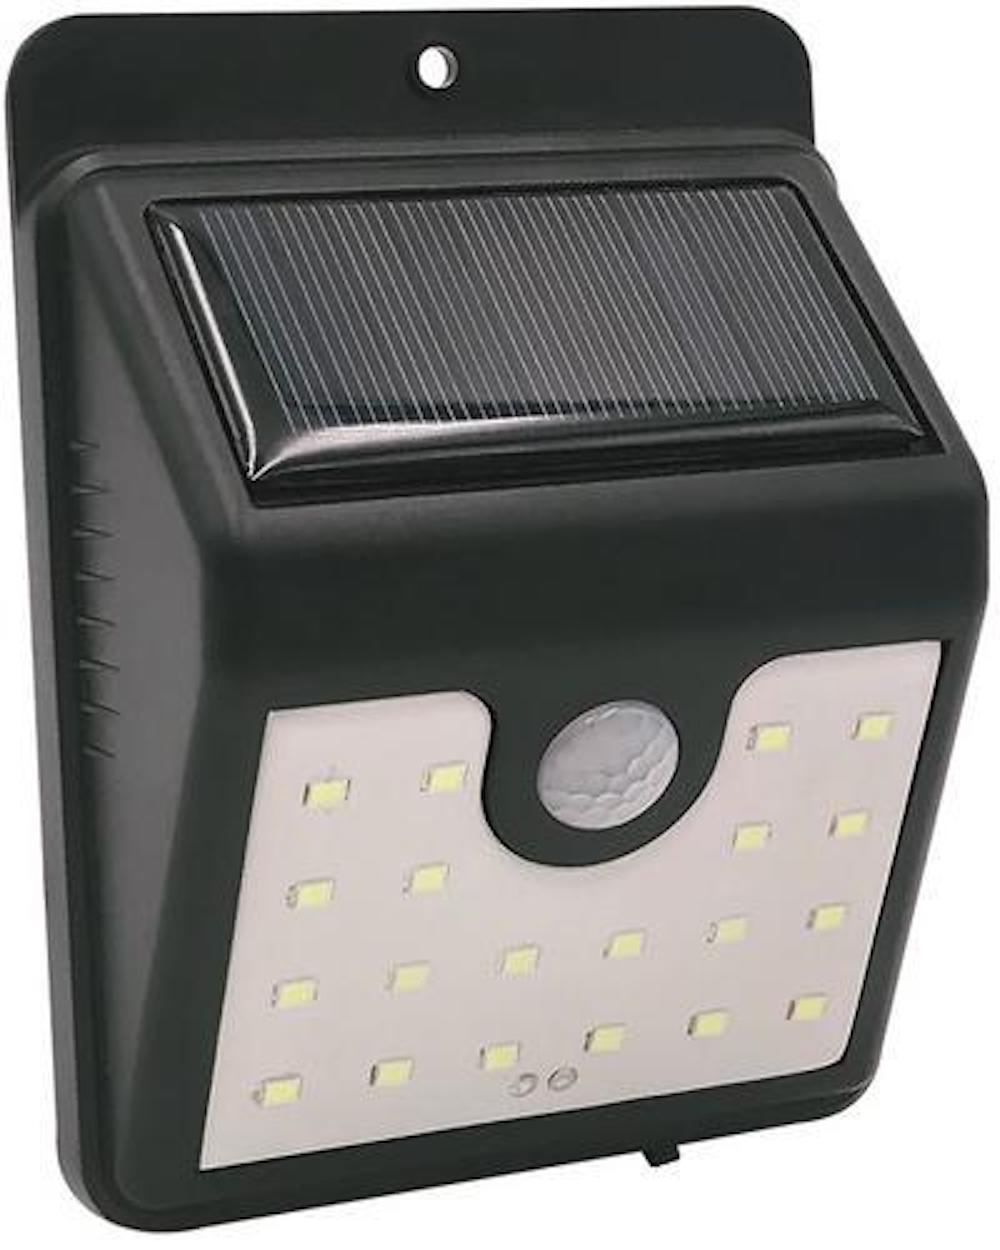 BERLIN Solarlampe mit automatischer Einschaltfunktion | HxBxT 9x4,5x11,5cm | 20 LEDs | Automatisches Schalten | Bewegungssensor | Gartenlampe, Rattanlampe